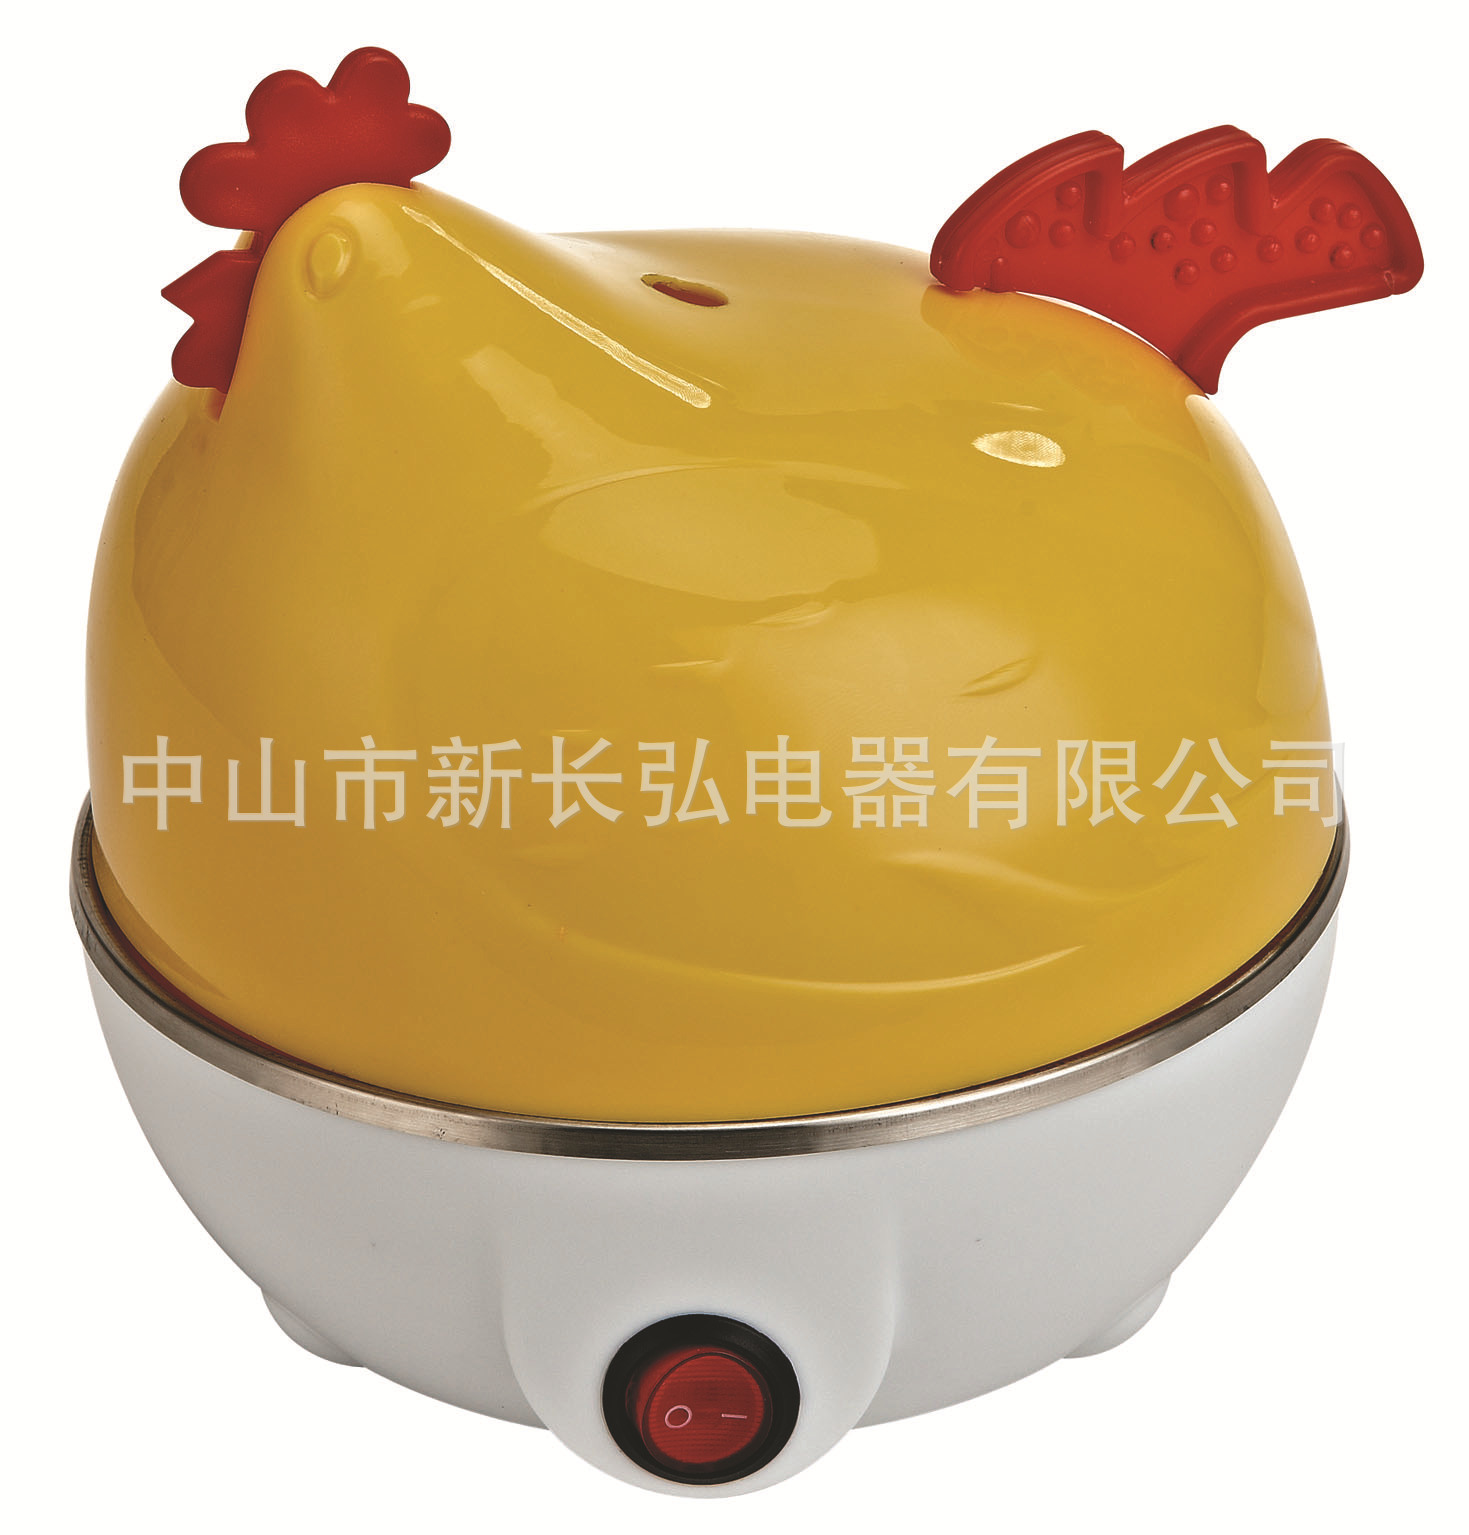 厂家批发  厨房小家电 多功能煮蛋器 蒸蛋器卡通母鸡蒸蛋器